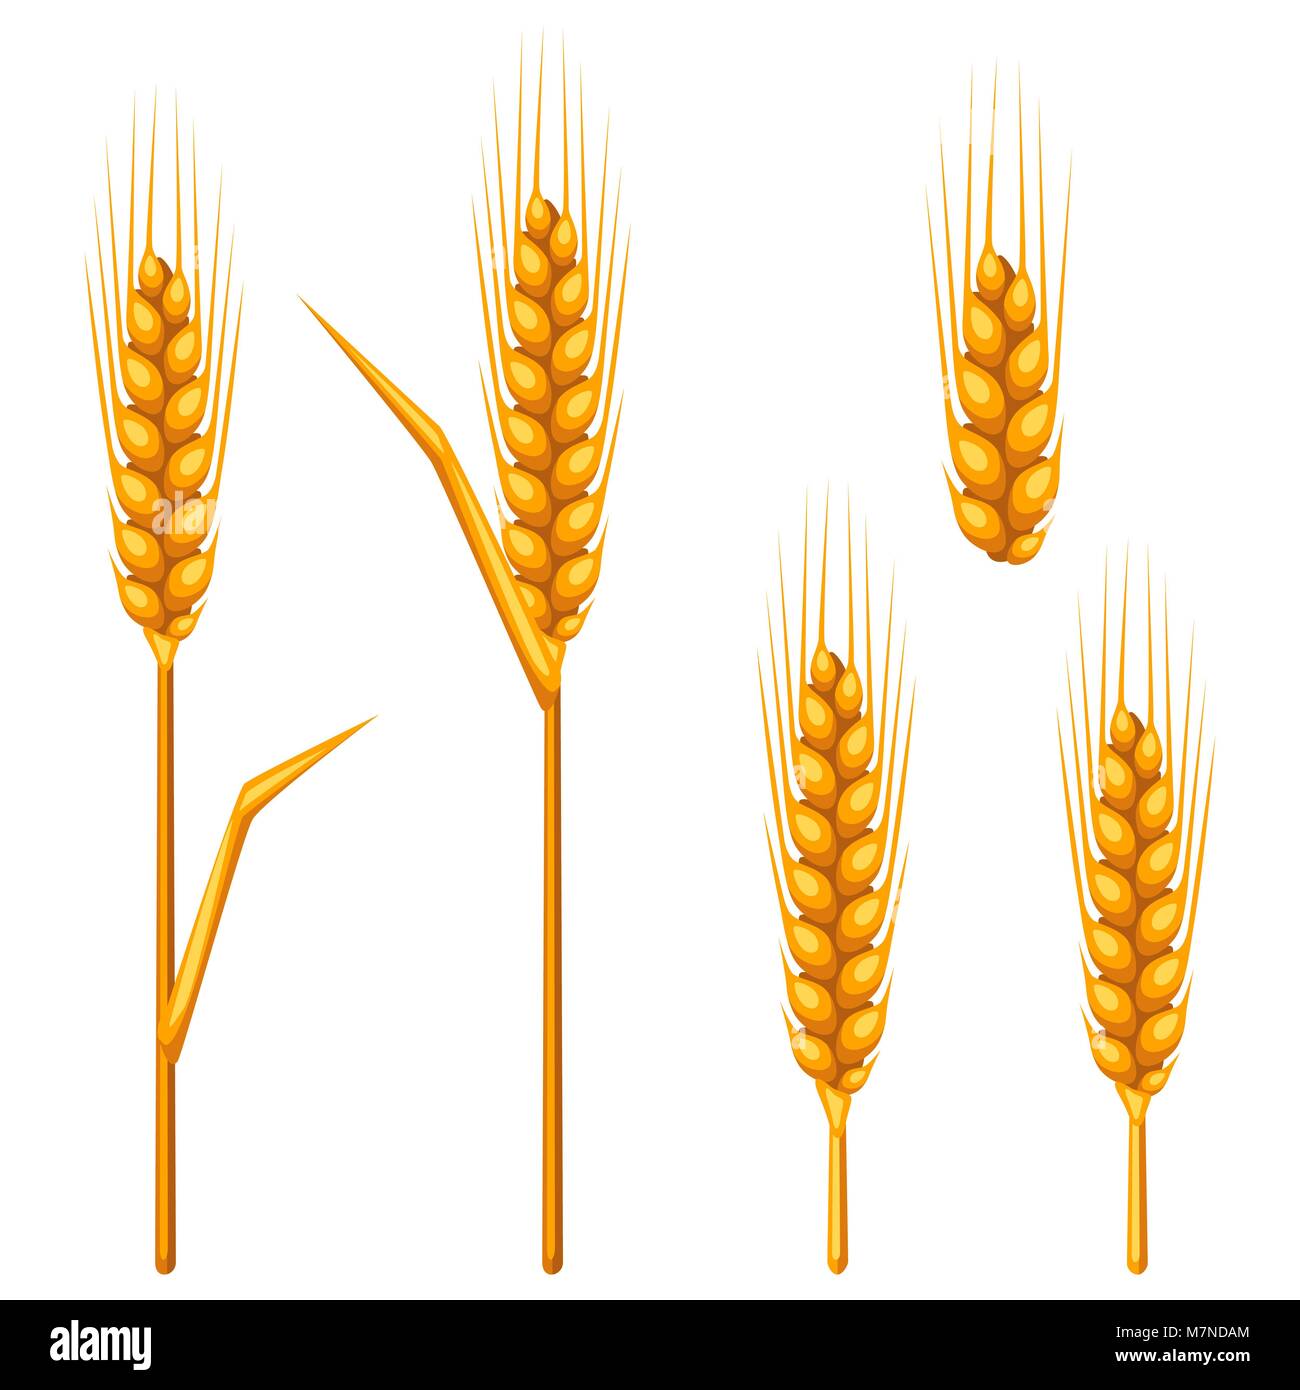 Ohren von Weizen, Gerste oder Roggen. Landwirtschaftliche Bild für die Dekoration Brot Verpackung, Bier Etiketten, Broschüren und Werbung Broschüren Stock Vektor